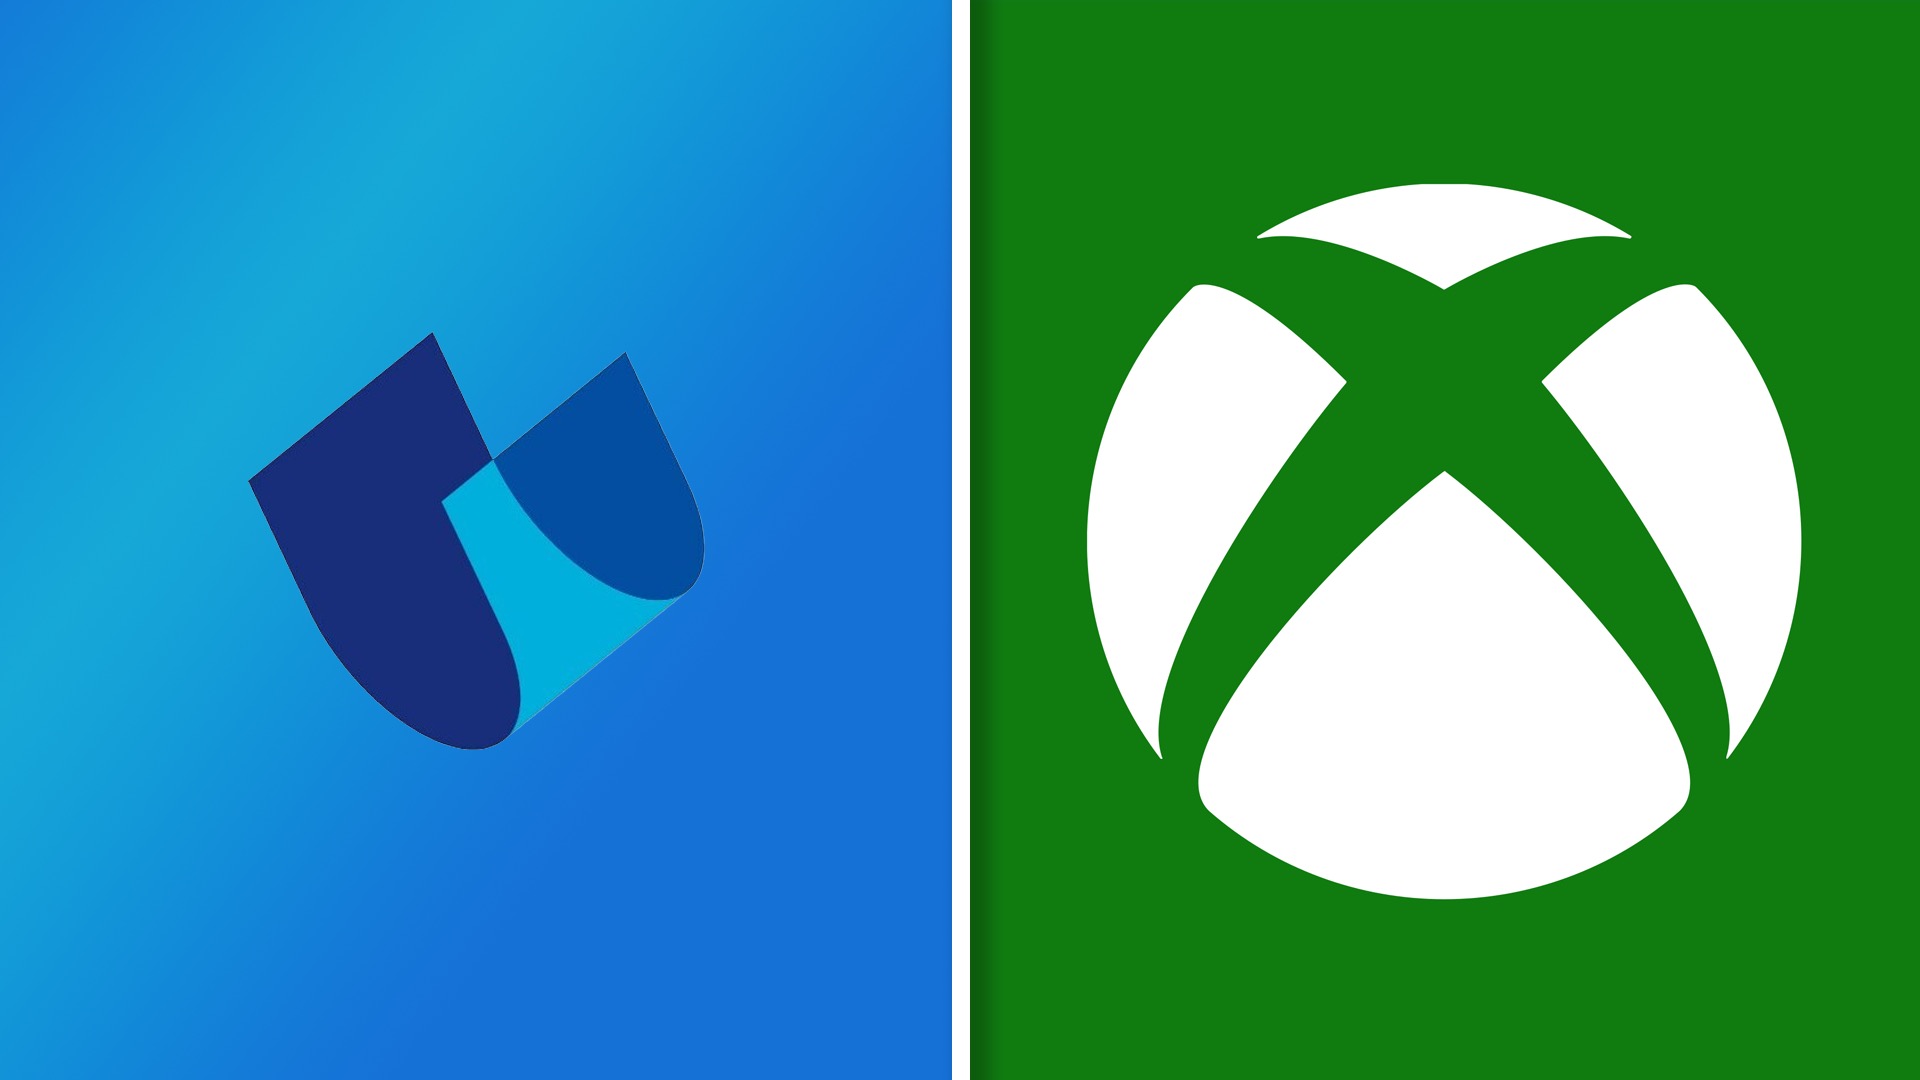 Команда Xbox объявила о четвертой 10-летней сделке по выпуску Call of Duty и игр Xbox - с Ubitus: с сайта NEWXBOXONE.RU